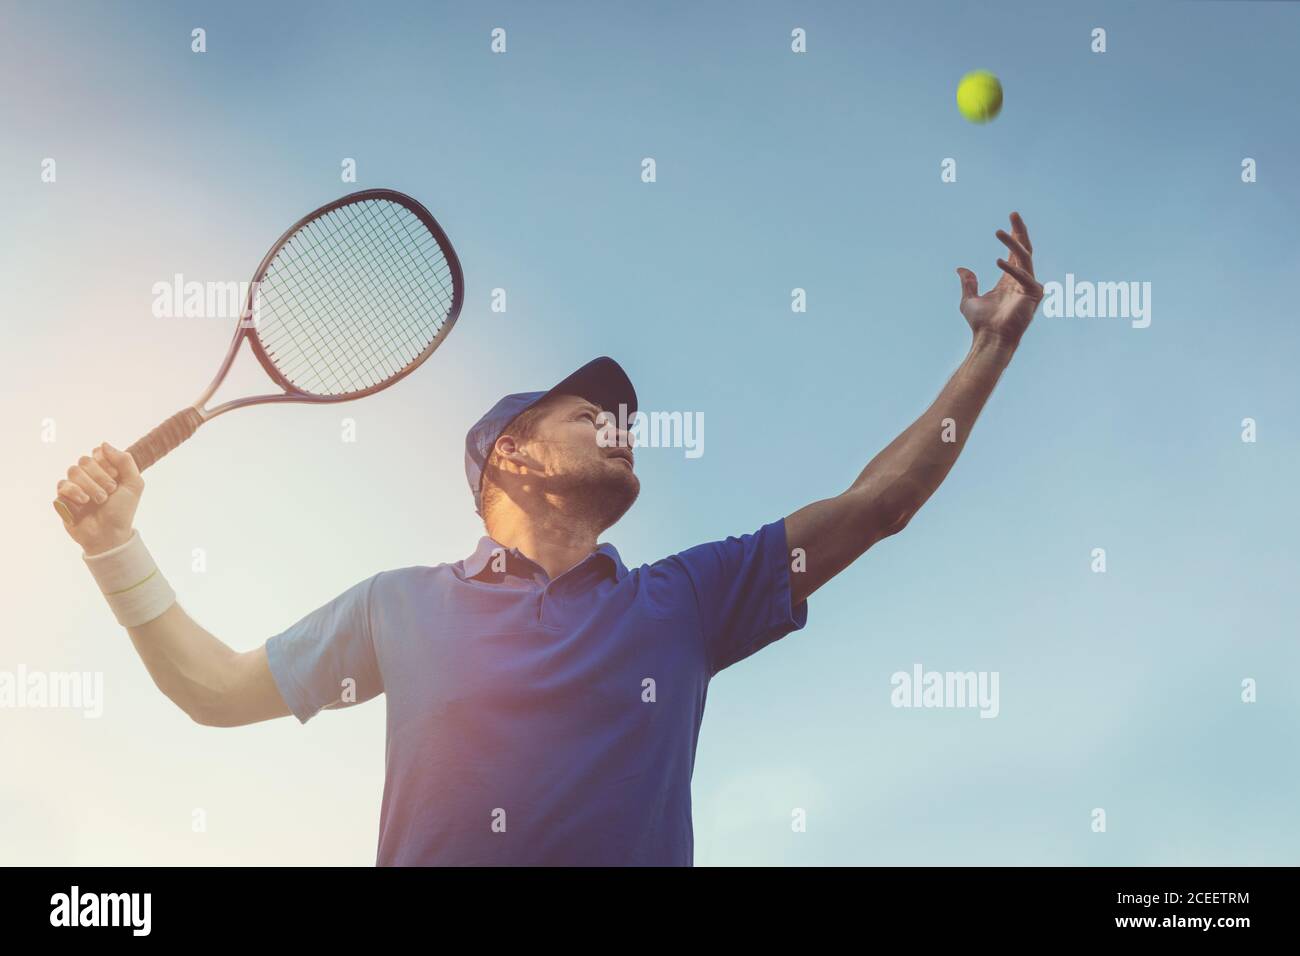 Aktiver junger Mann spielt Tennis im Freien. Servieren Sie den Ball gegen blauen Himmel Stockfoto